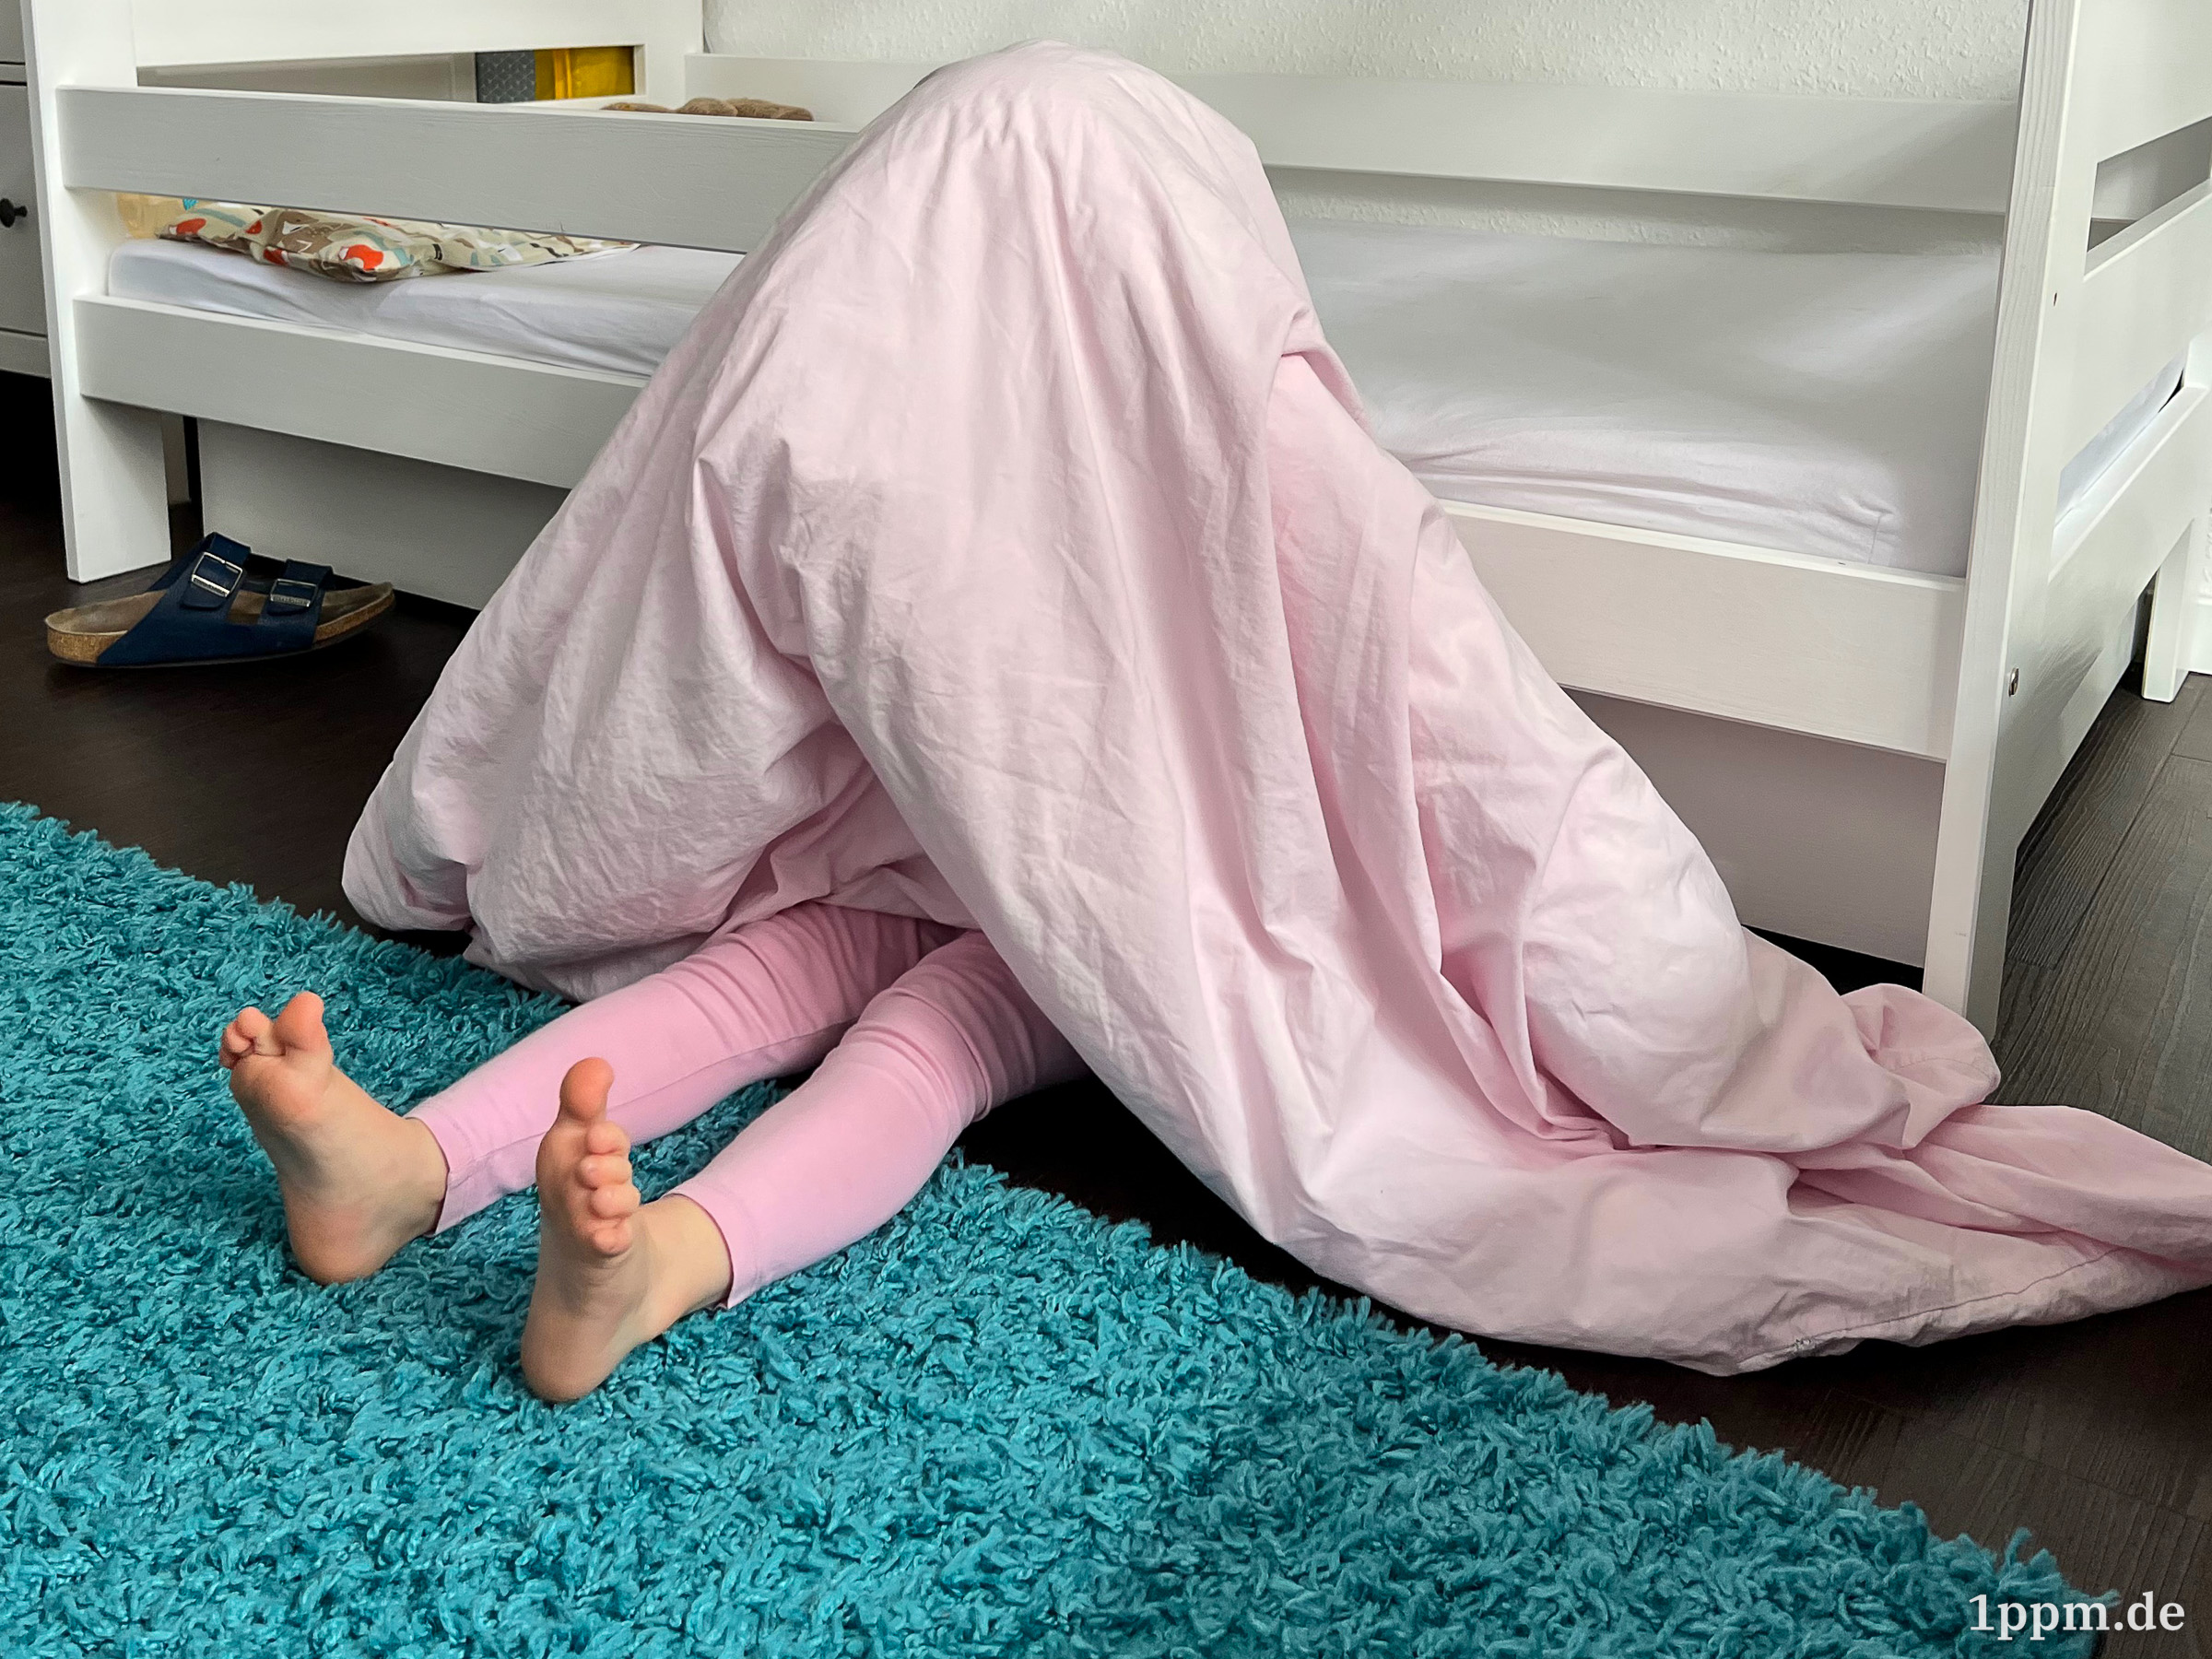 Klein-Lea sitzt auf dem Boden an ihr Bett gelehnt und hat sich ihre Decke über den Kopf gezogen. Man sieht nur ihre Beine herausragen.